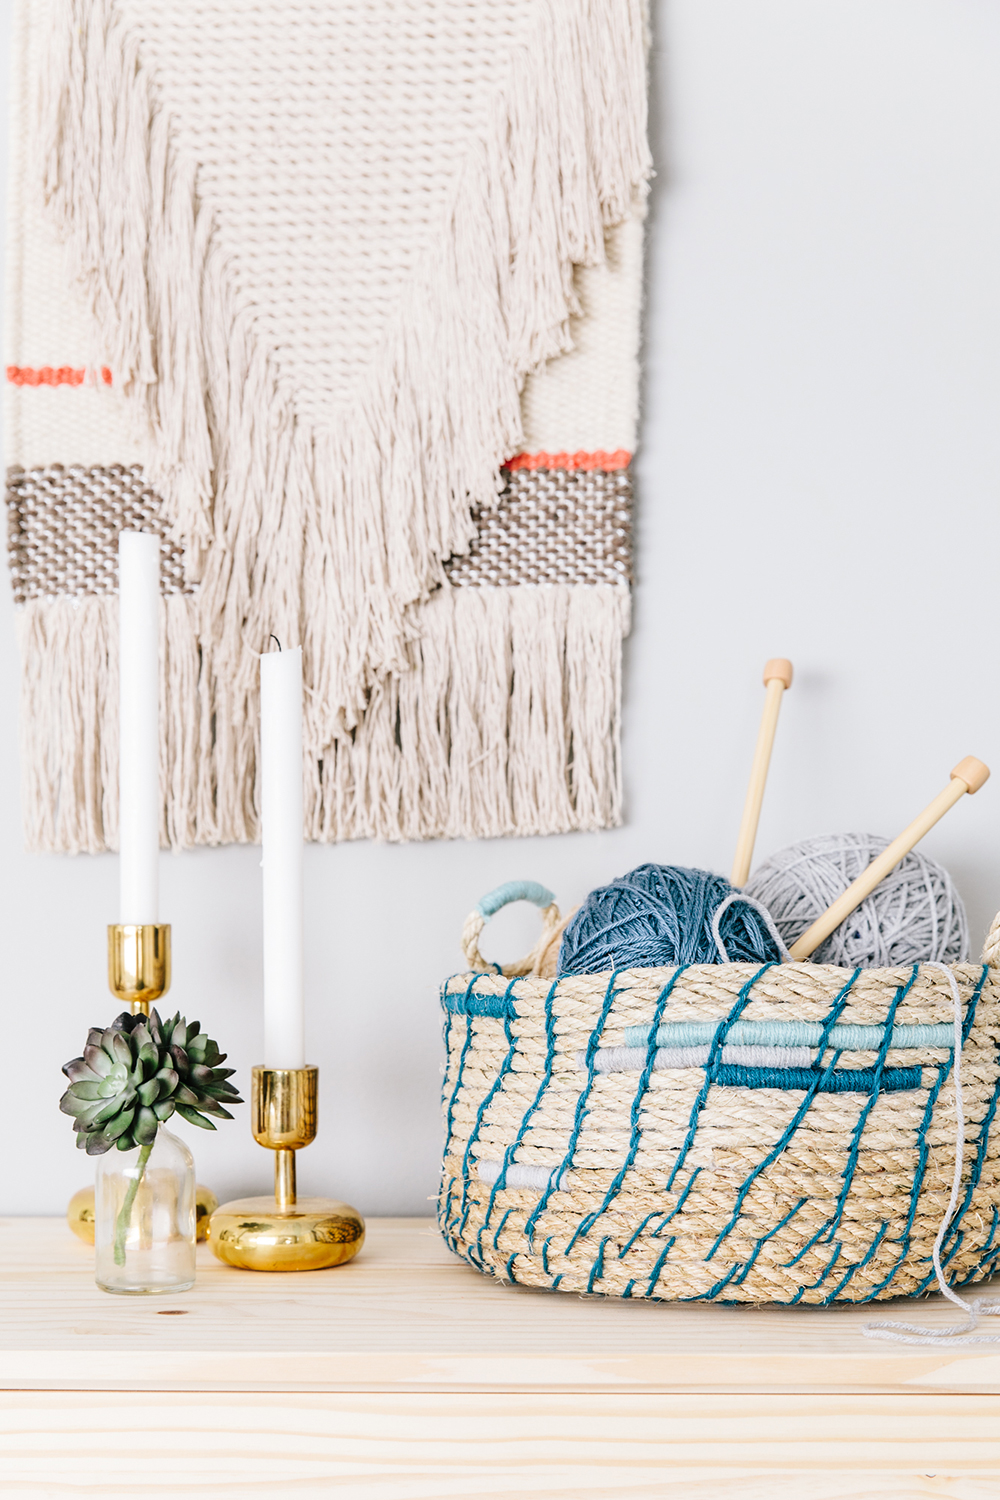 DIY rope basket with blue yarn decor